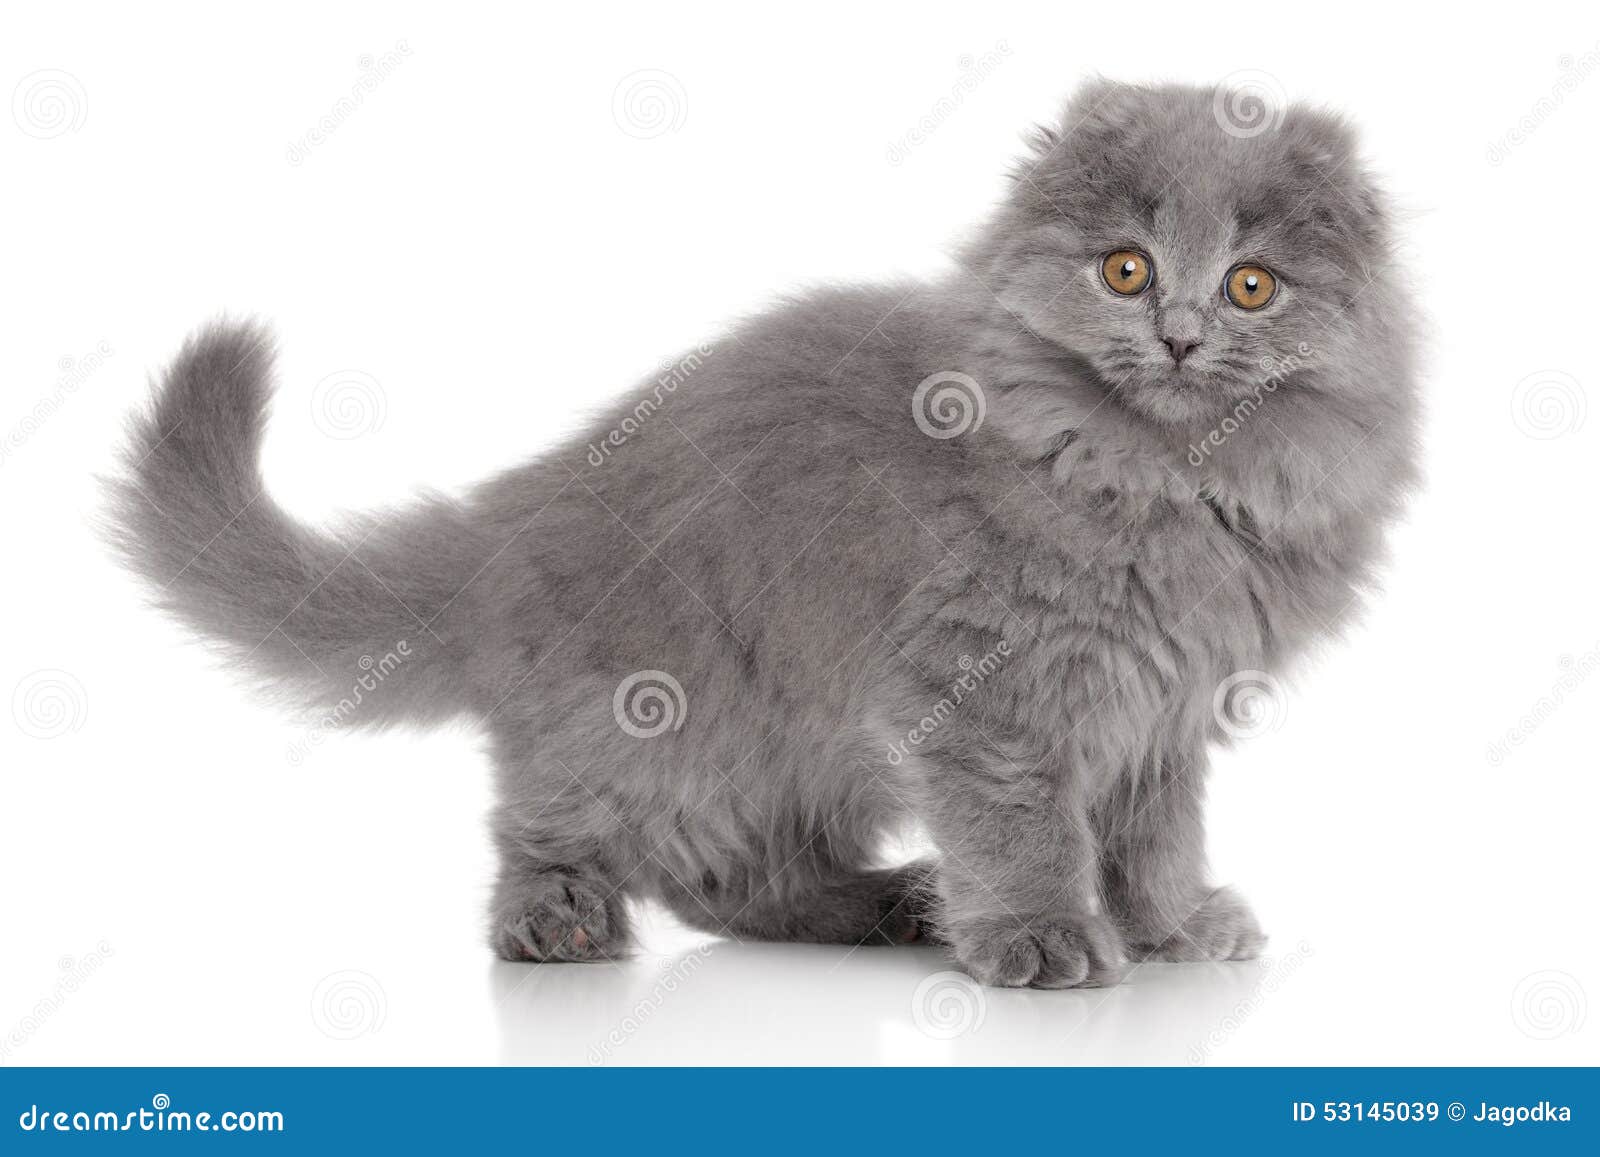 Scottish Highland Fold Kitten Stock Image - Image of ...